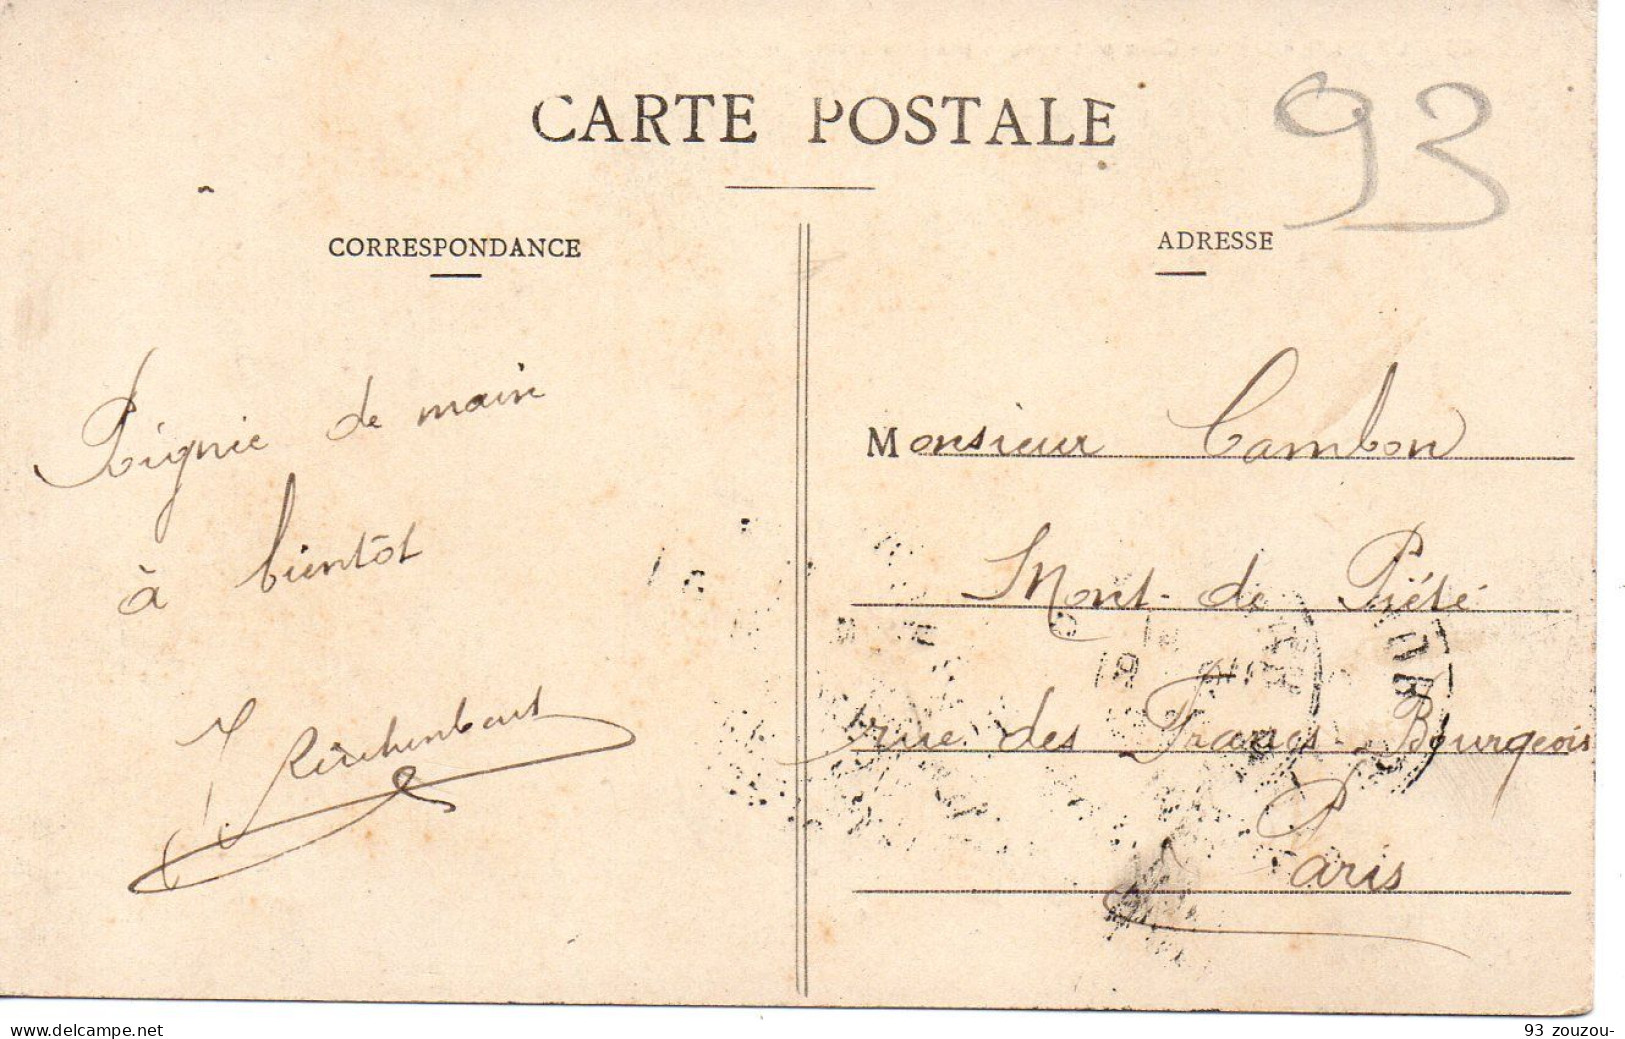 93. LES LILAS. . Un Coin Pittoresque Près Du Fort . 1910. - Les Lilas